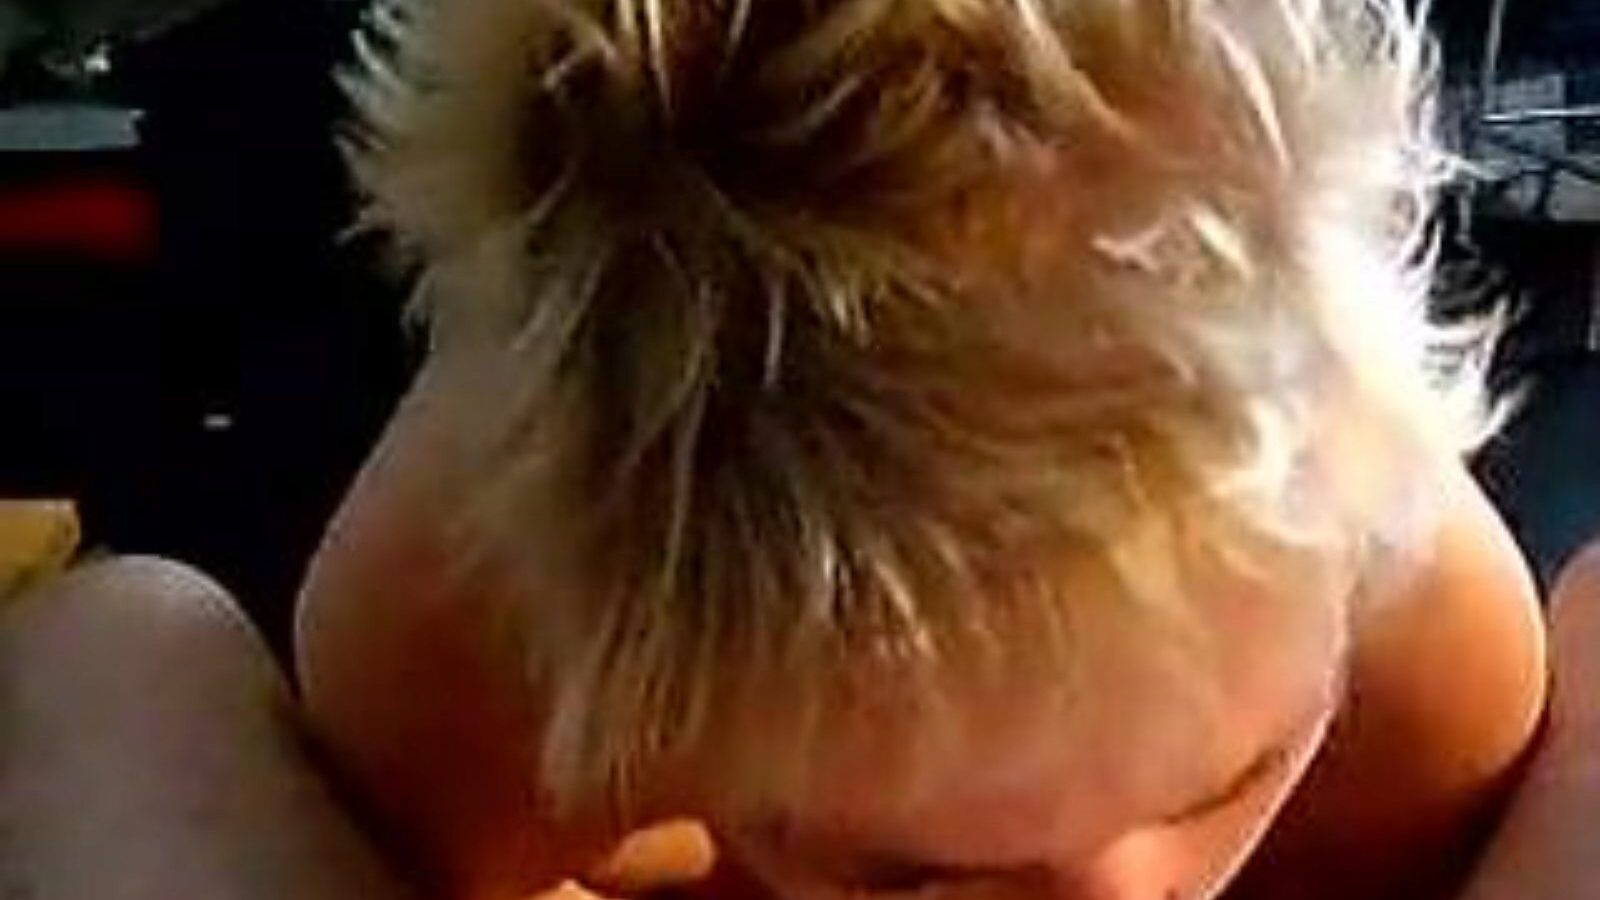 leuke dame: hausgemachtes & altes mädchen porno video a6 - xhamster schau dir leuke dame tube fickfest kostenlos auf xhamster an, mit der heißesten sammlung niederländischer hausgemachter, alter mädchen & saugender pornografie clip gigs